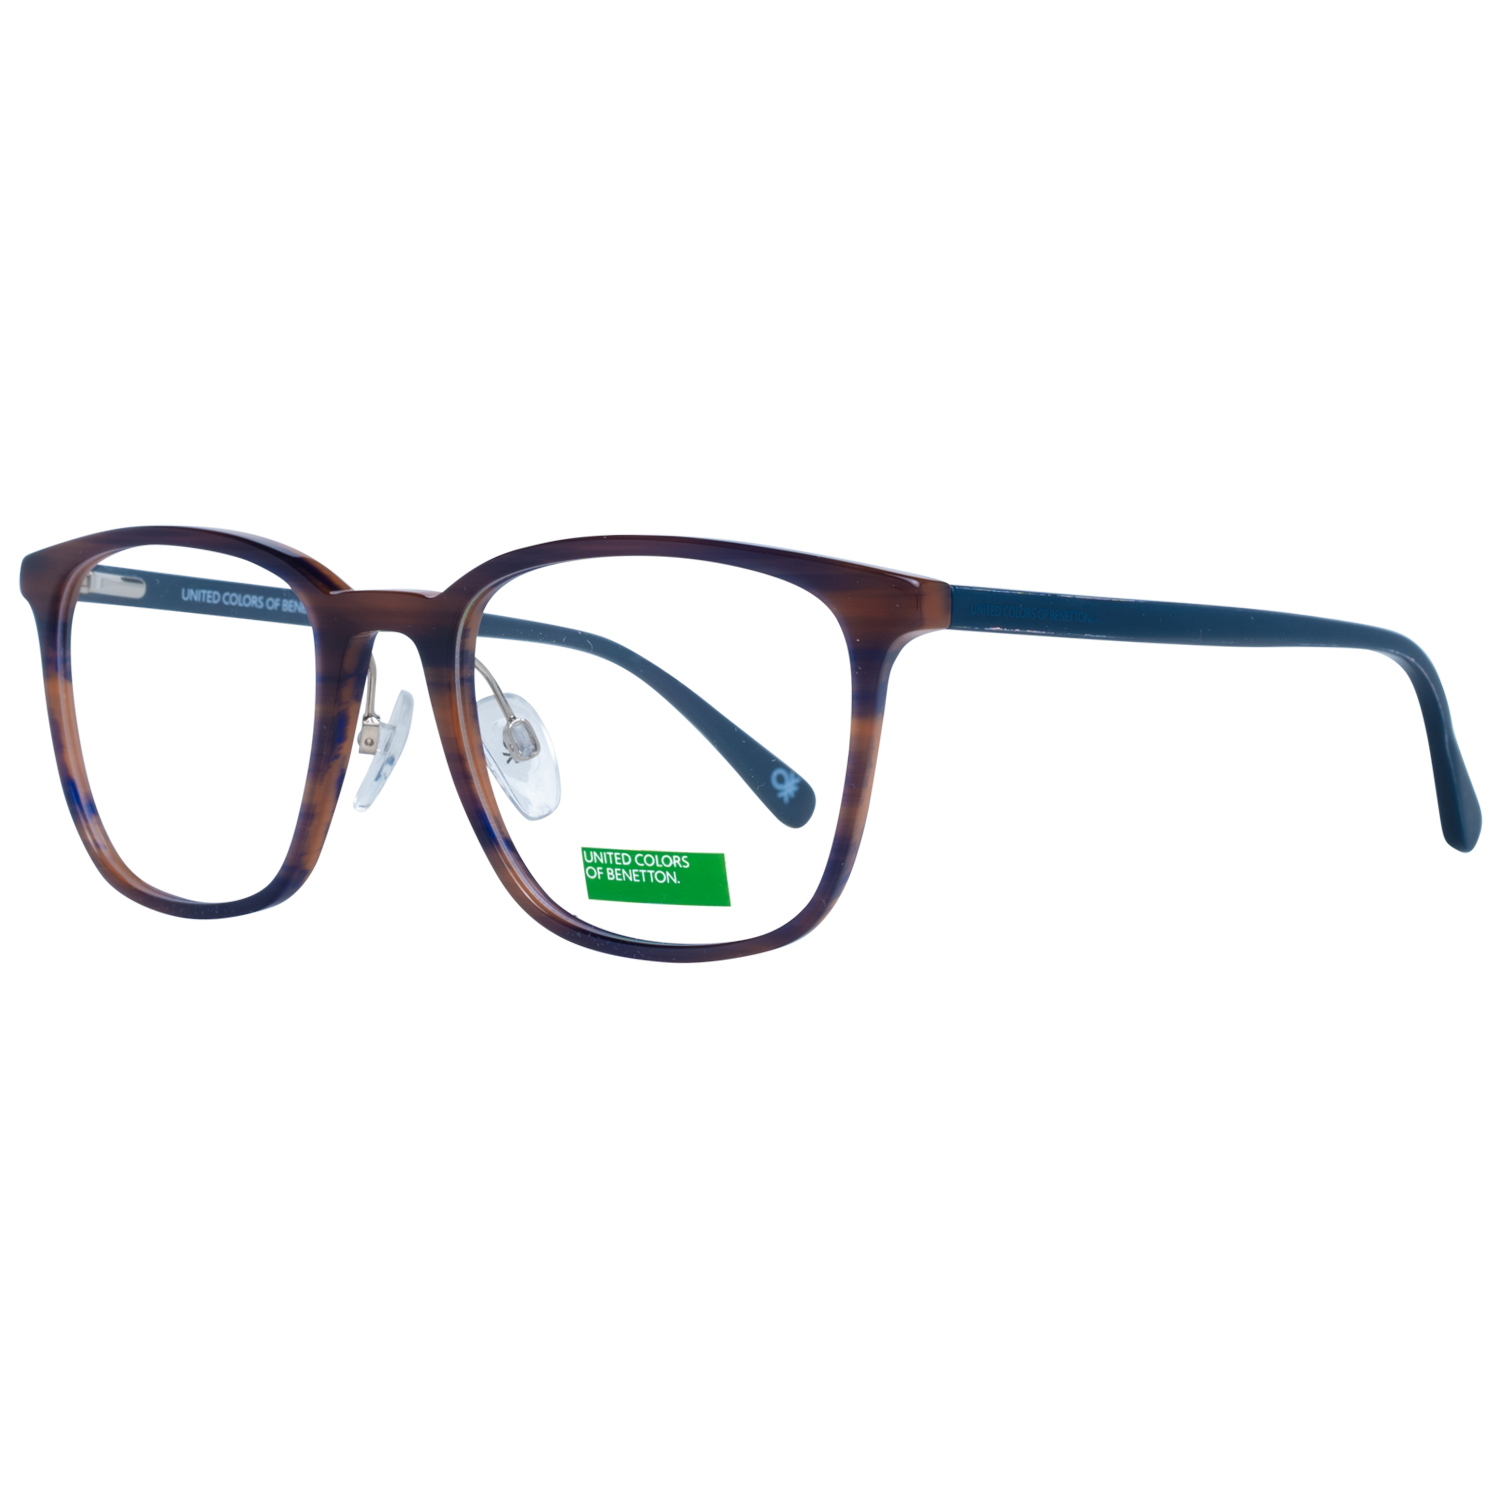 Benetton Frames Benetton Glasses Frames BEO1002 652 52 Eyeglasses Eyewear UK USA Australia 